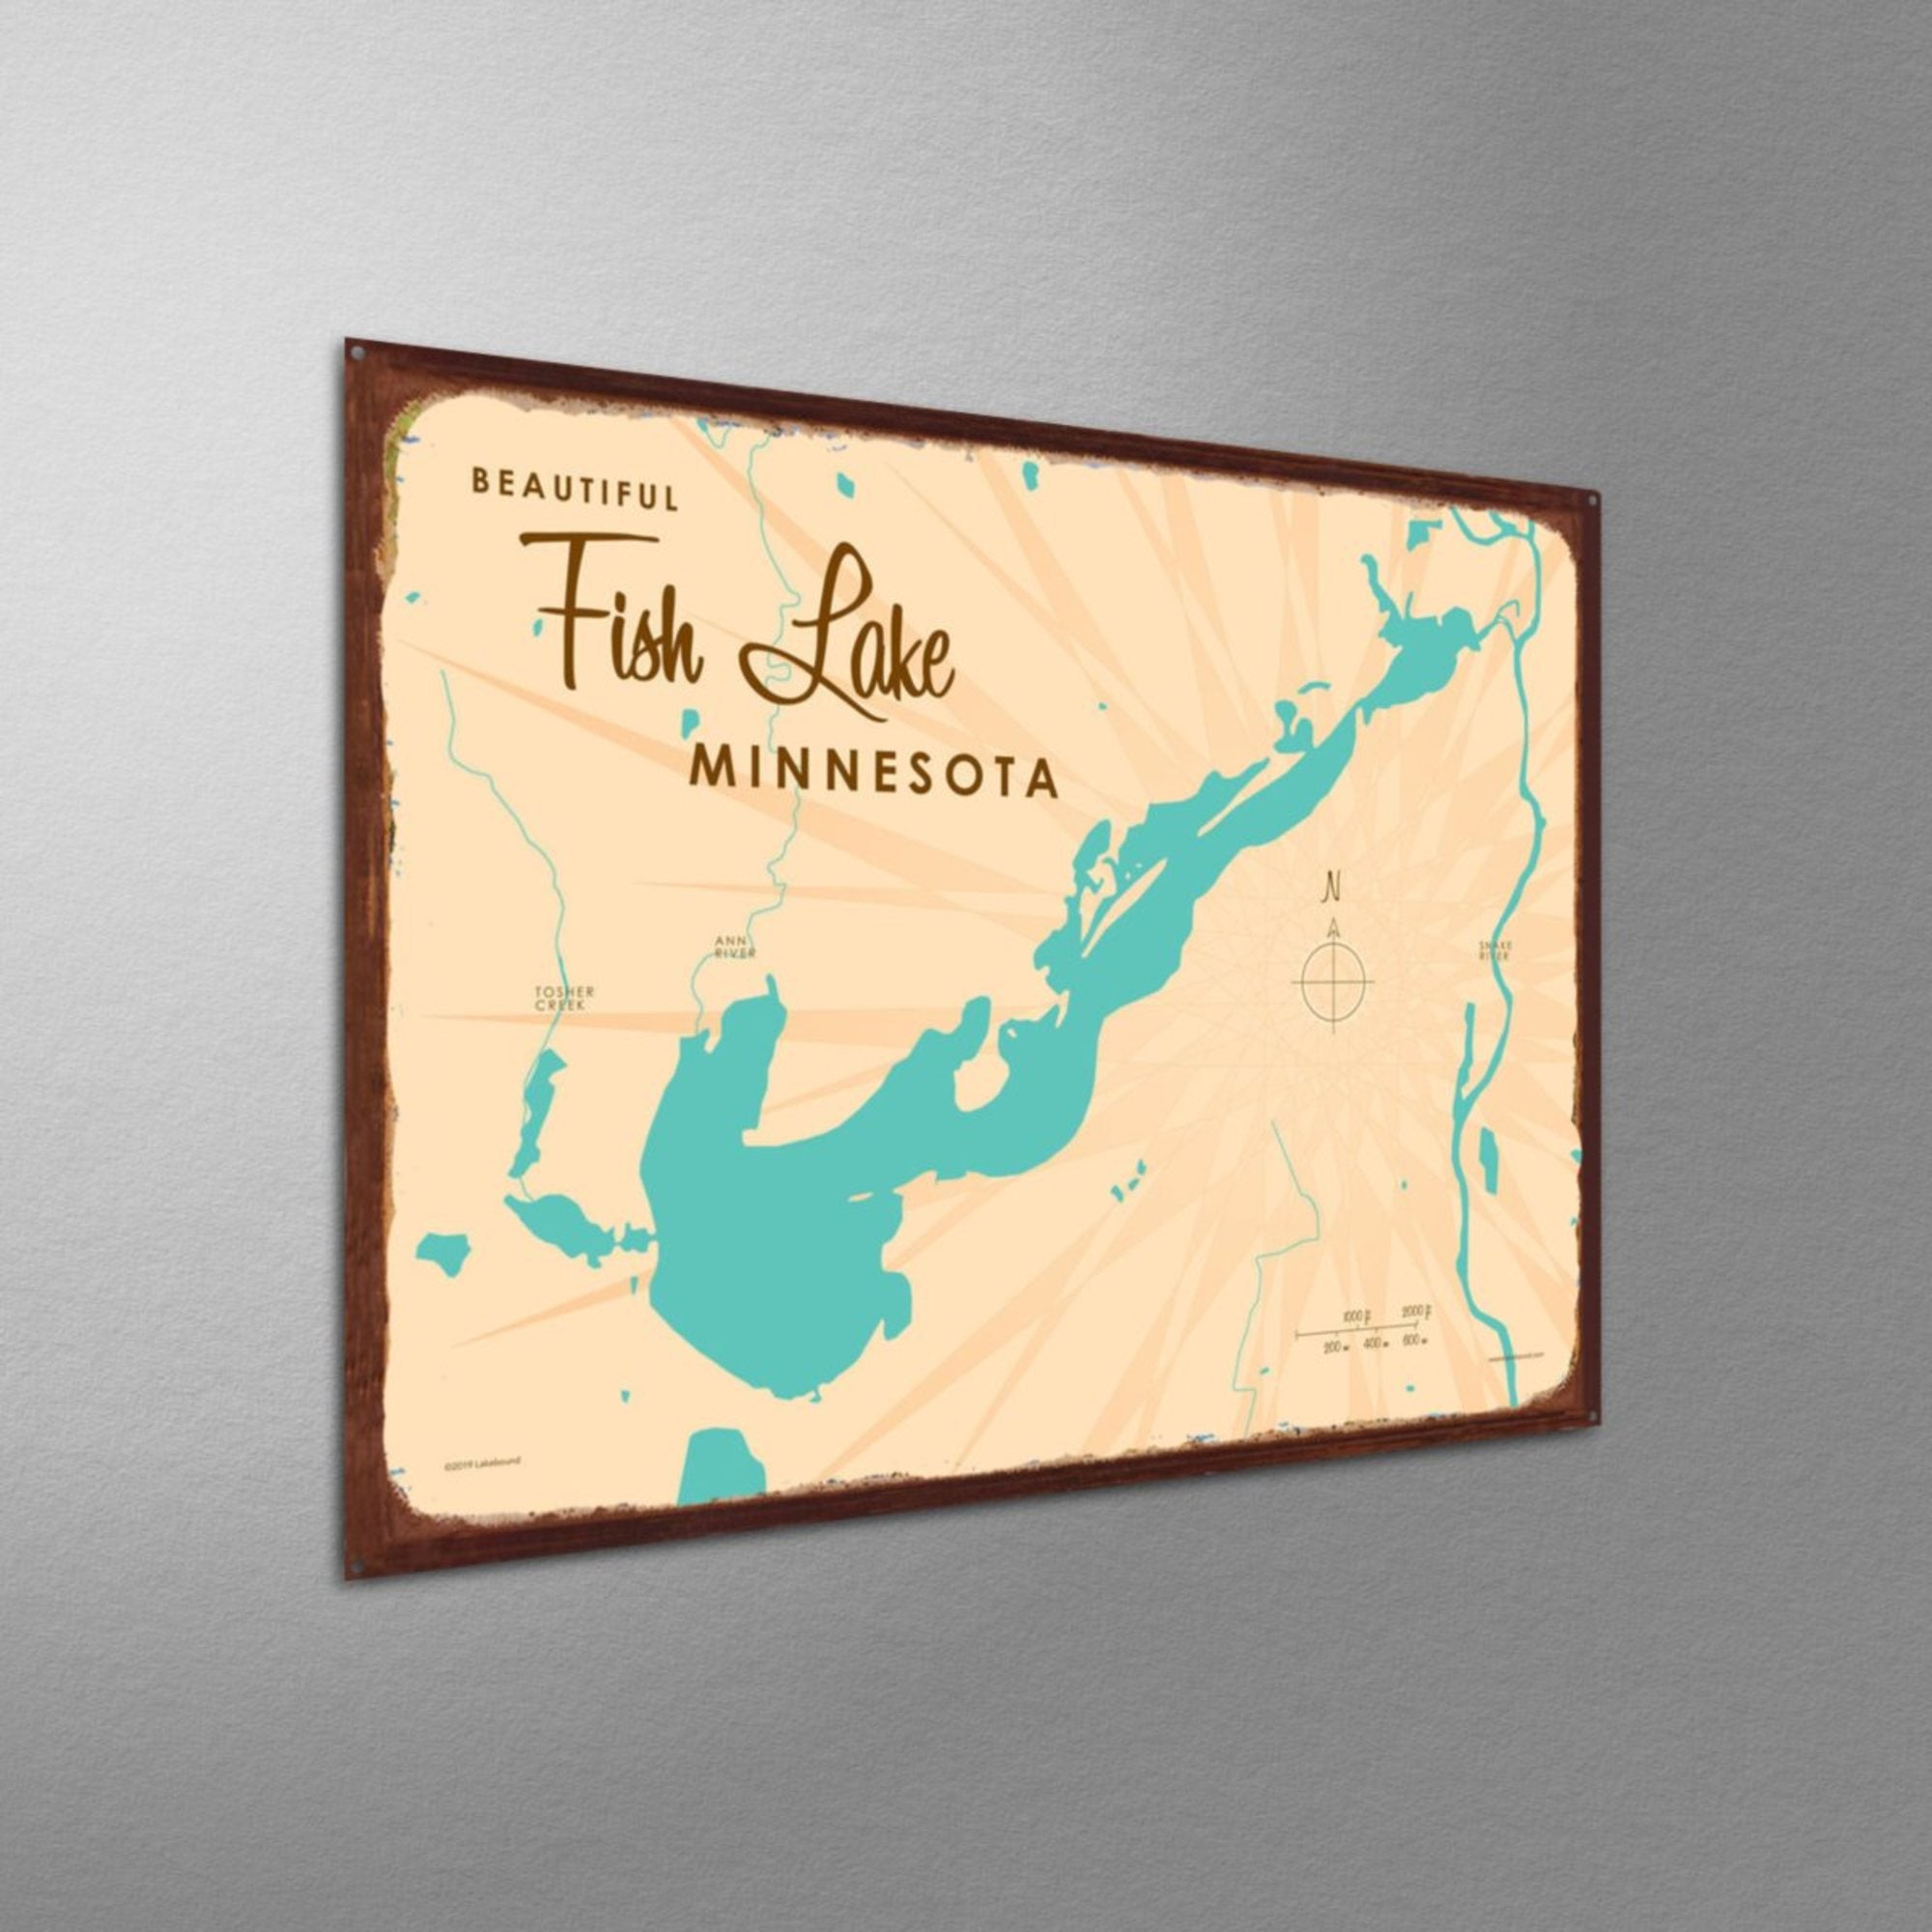 Fish Lake Minnesota, Rustic Metal Sign Map Art